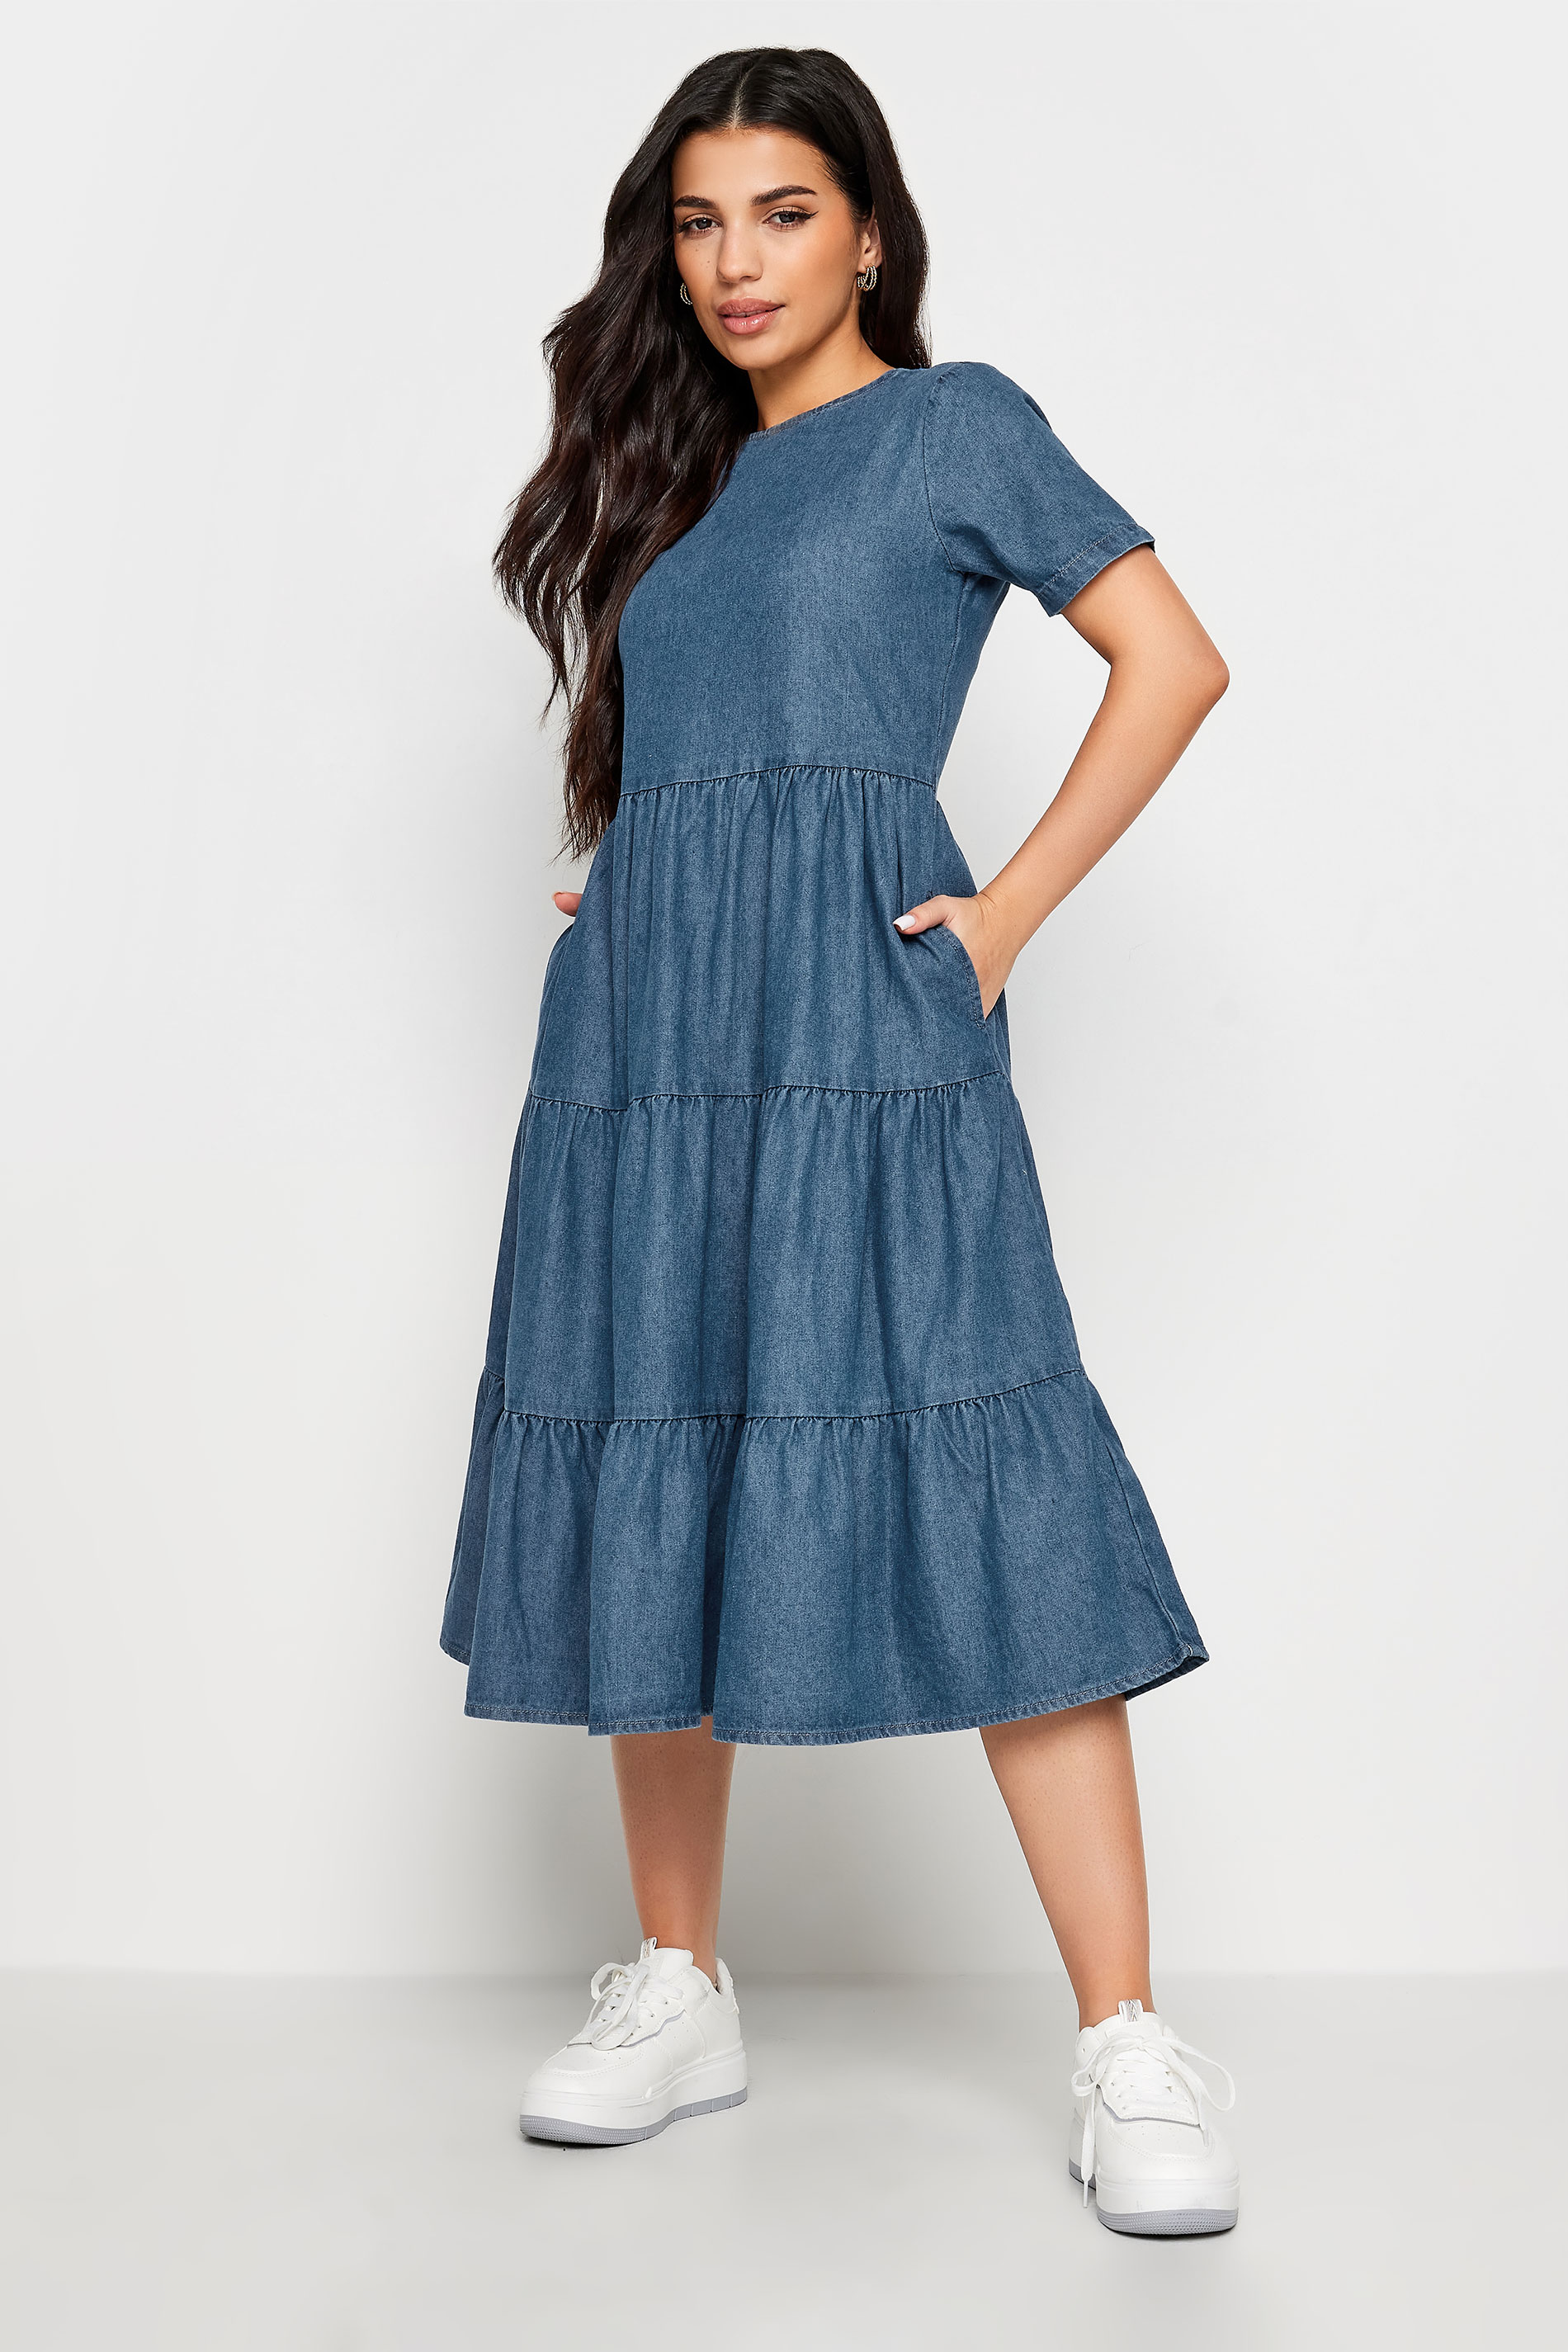 PixieGirl Petite Womens Blue Denim Tiered Midi Dress | PixieGirl 2